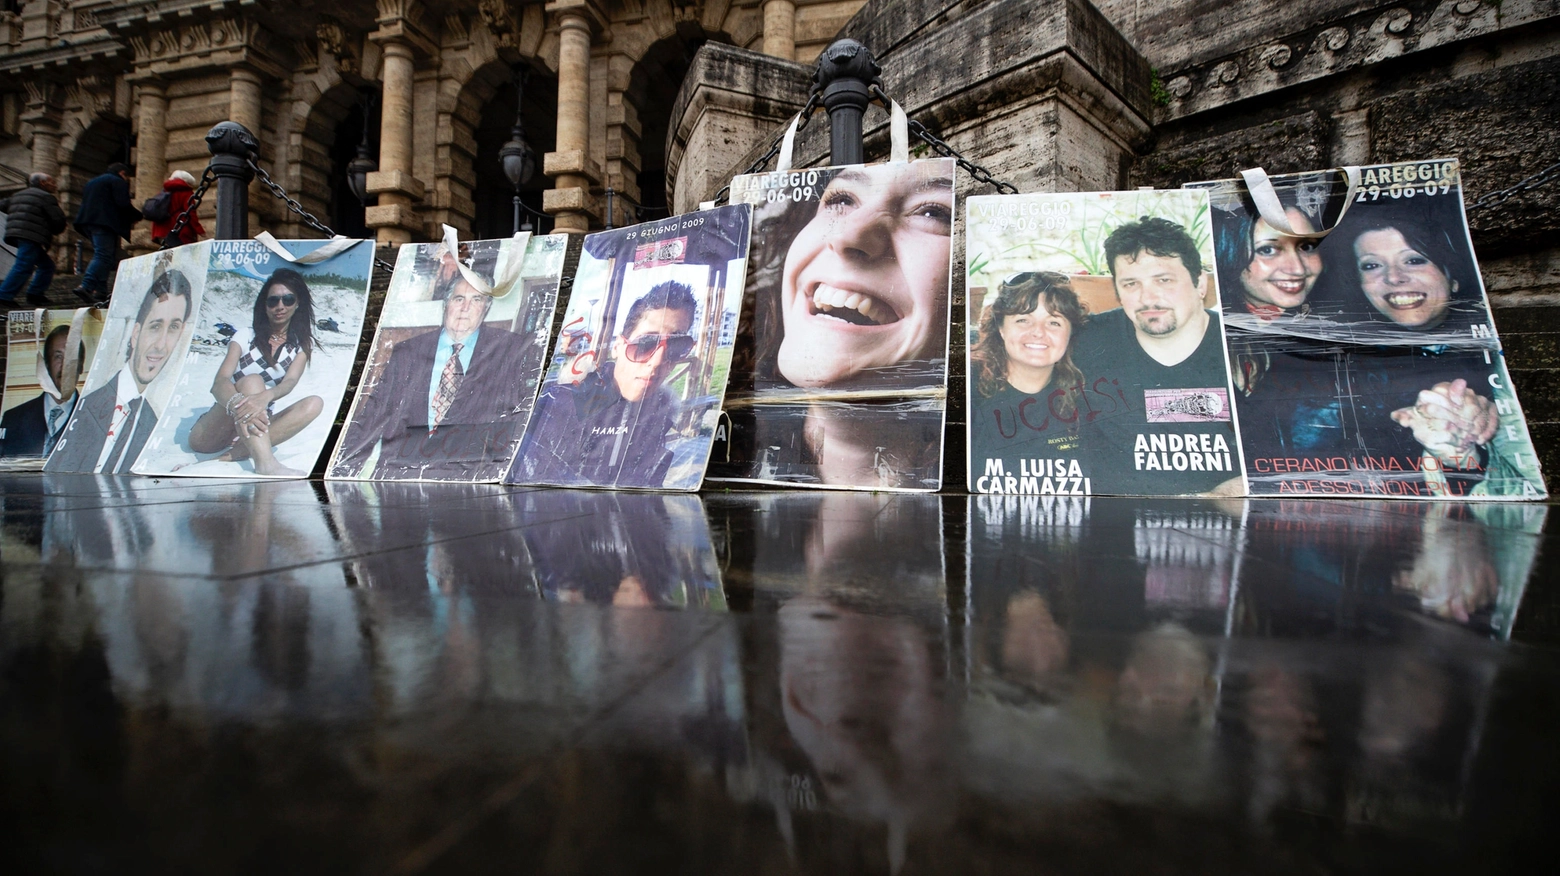 Famigliari delle vittime con le associazioni espongono foto e striscioni durante l'udienza alla Corte Suprema di Cassazione